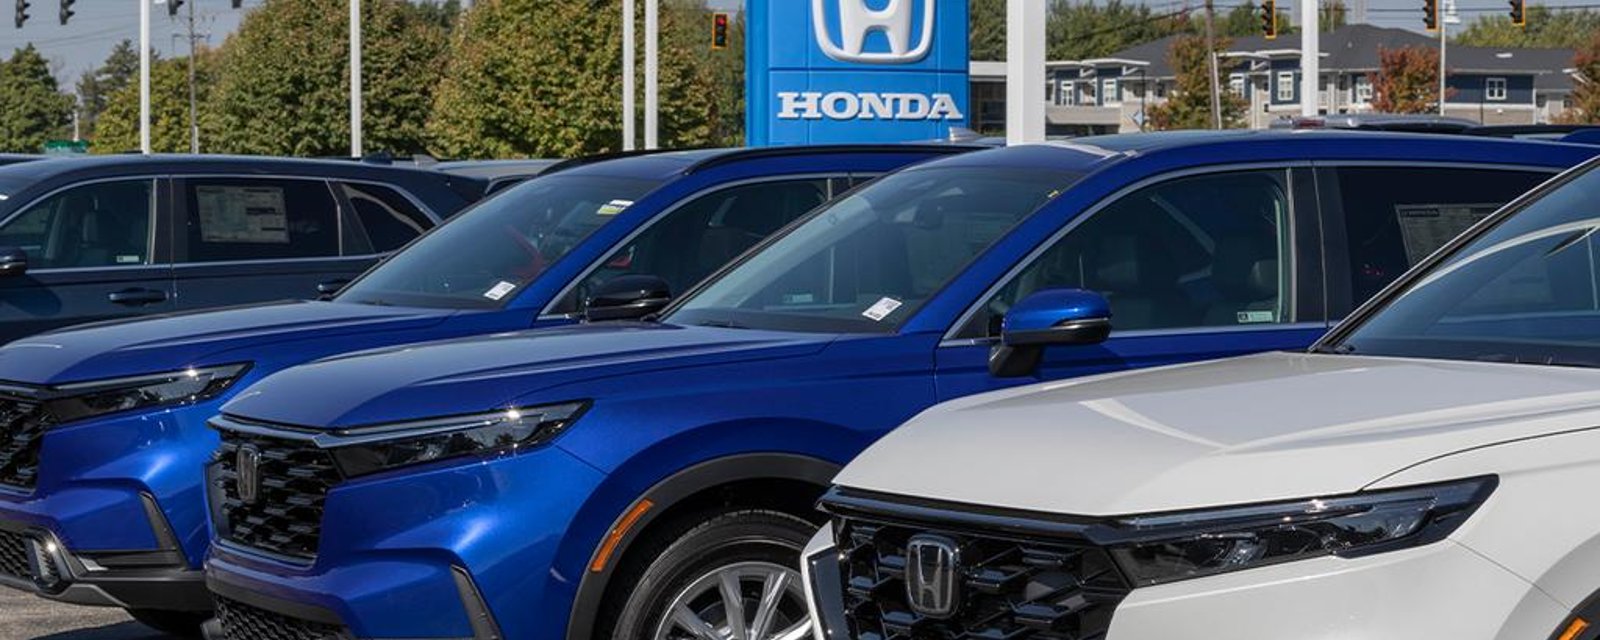 Honda visé par une nouvelle demande d’action collective concernant des frais abusifs.